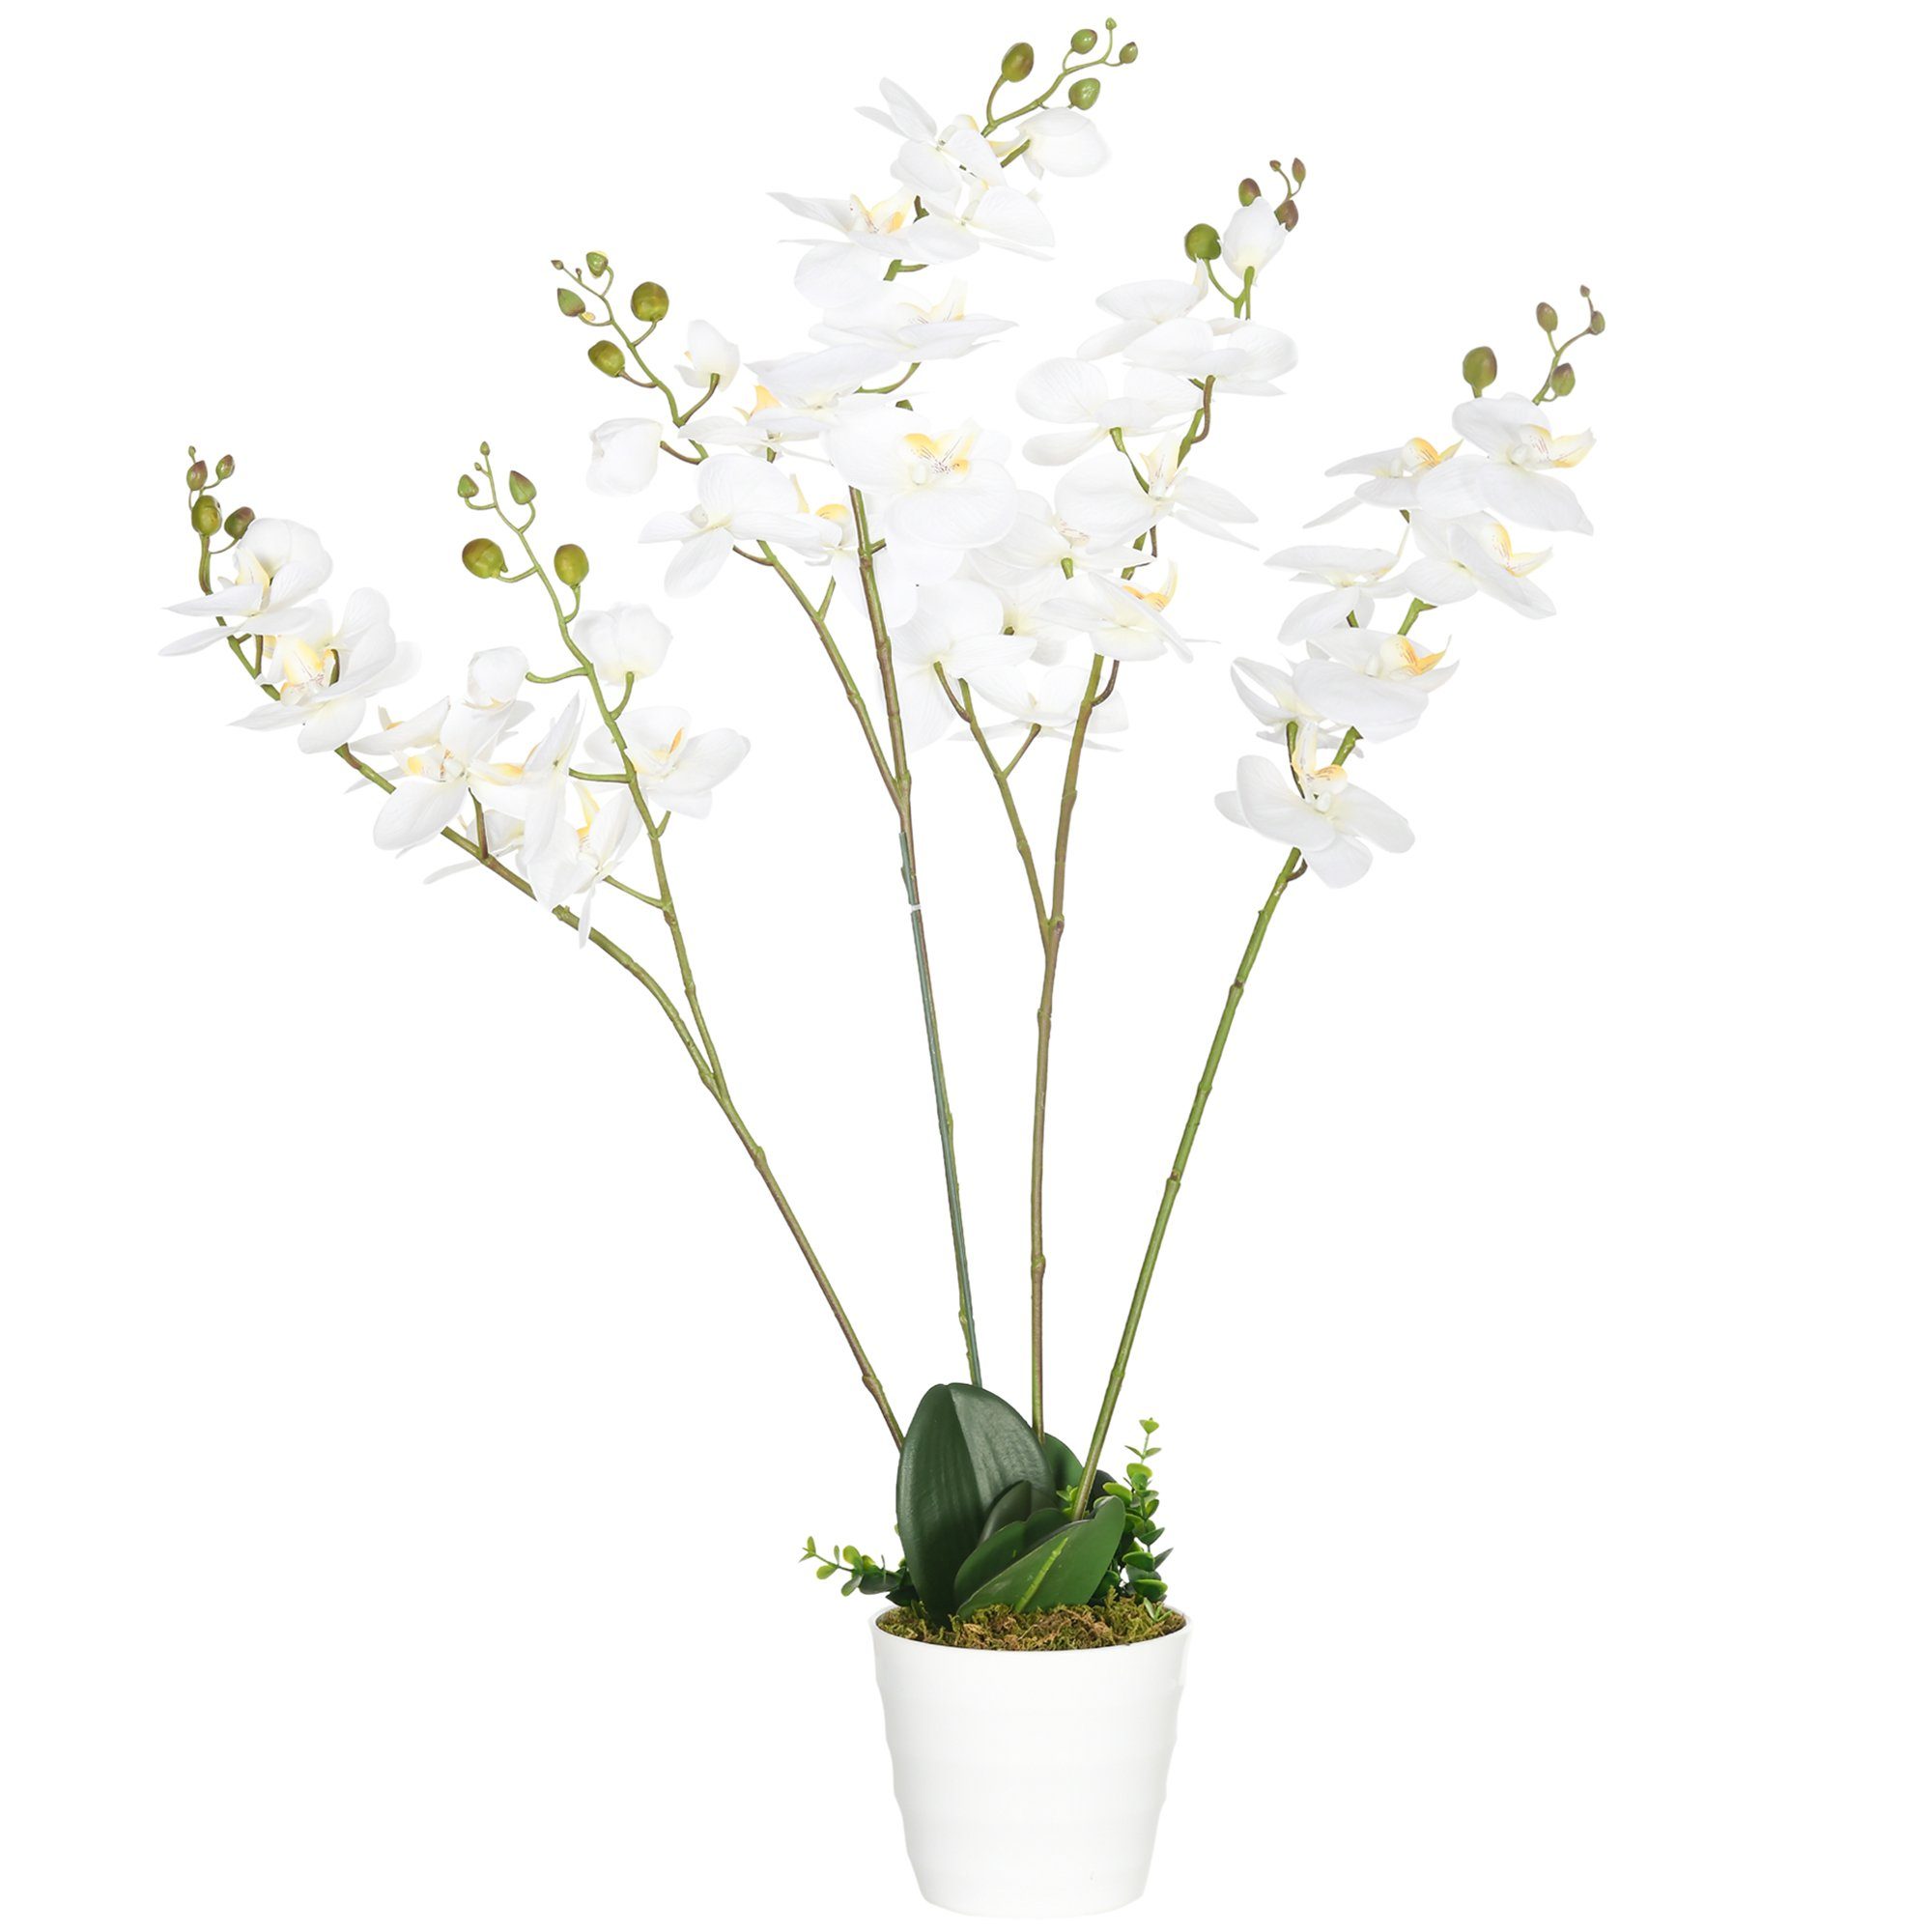 Kunstpflanze künstliche Pflanze, 16,5 cm x 16,5 cm x 14 cm, Grün + Weiß  Orchidee, HOMCOM, Höhe 75 cm, im Kunststofftopf